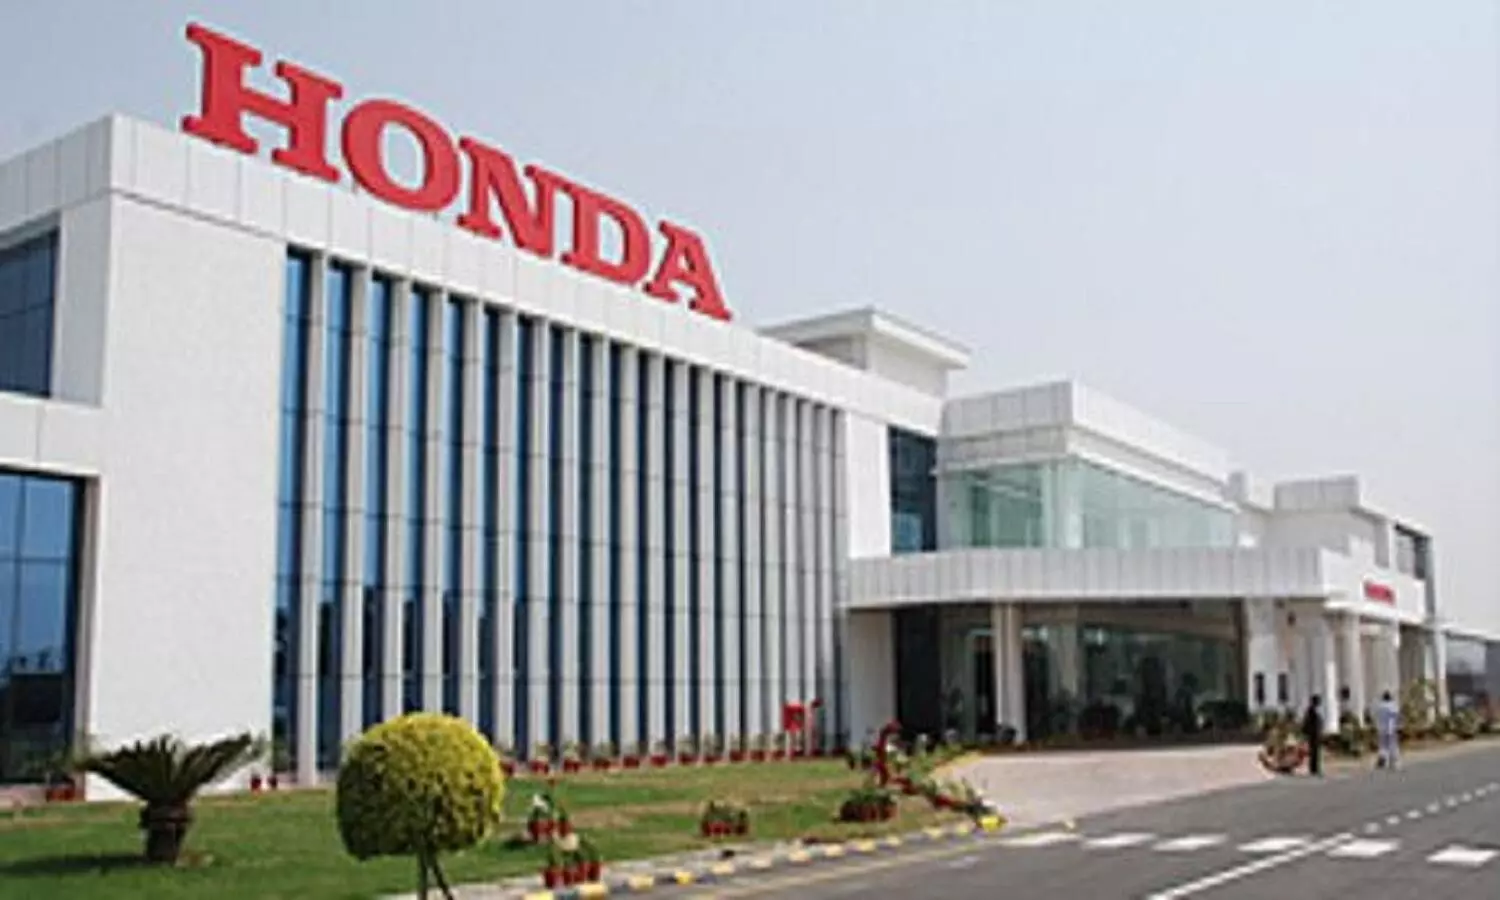 होण्डा कंपनी का इतिहास भारत में